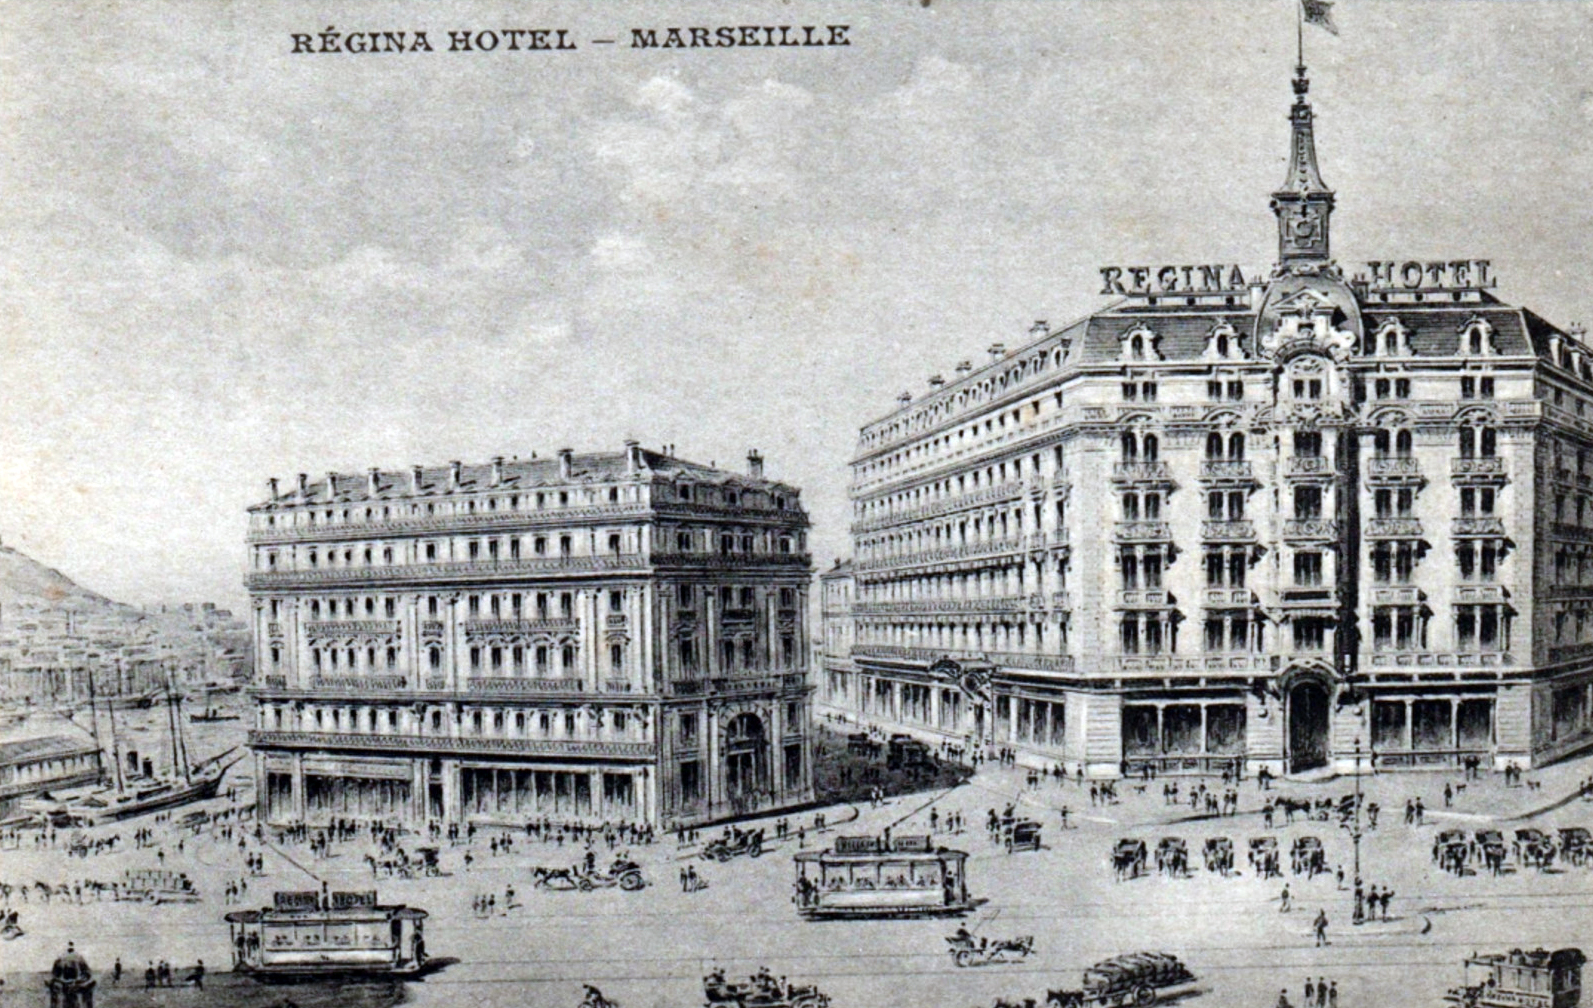 Régina Hôtel & La Compagnie des Messageries Maritimes, 1907